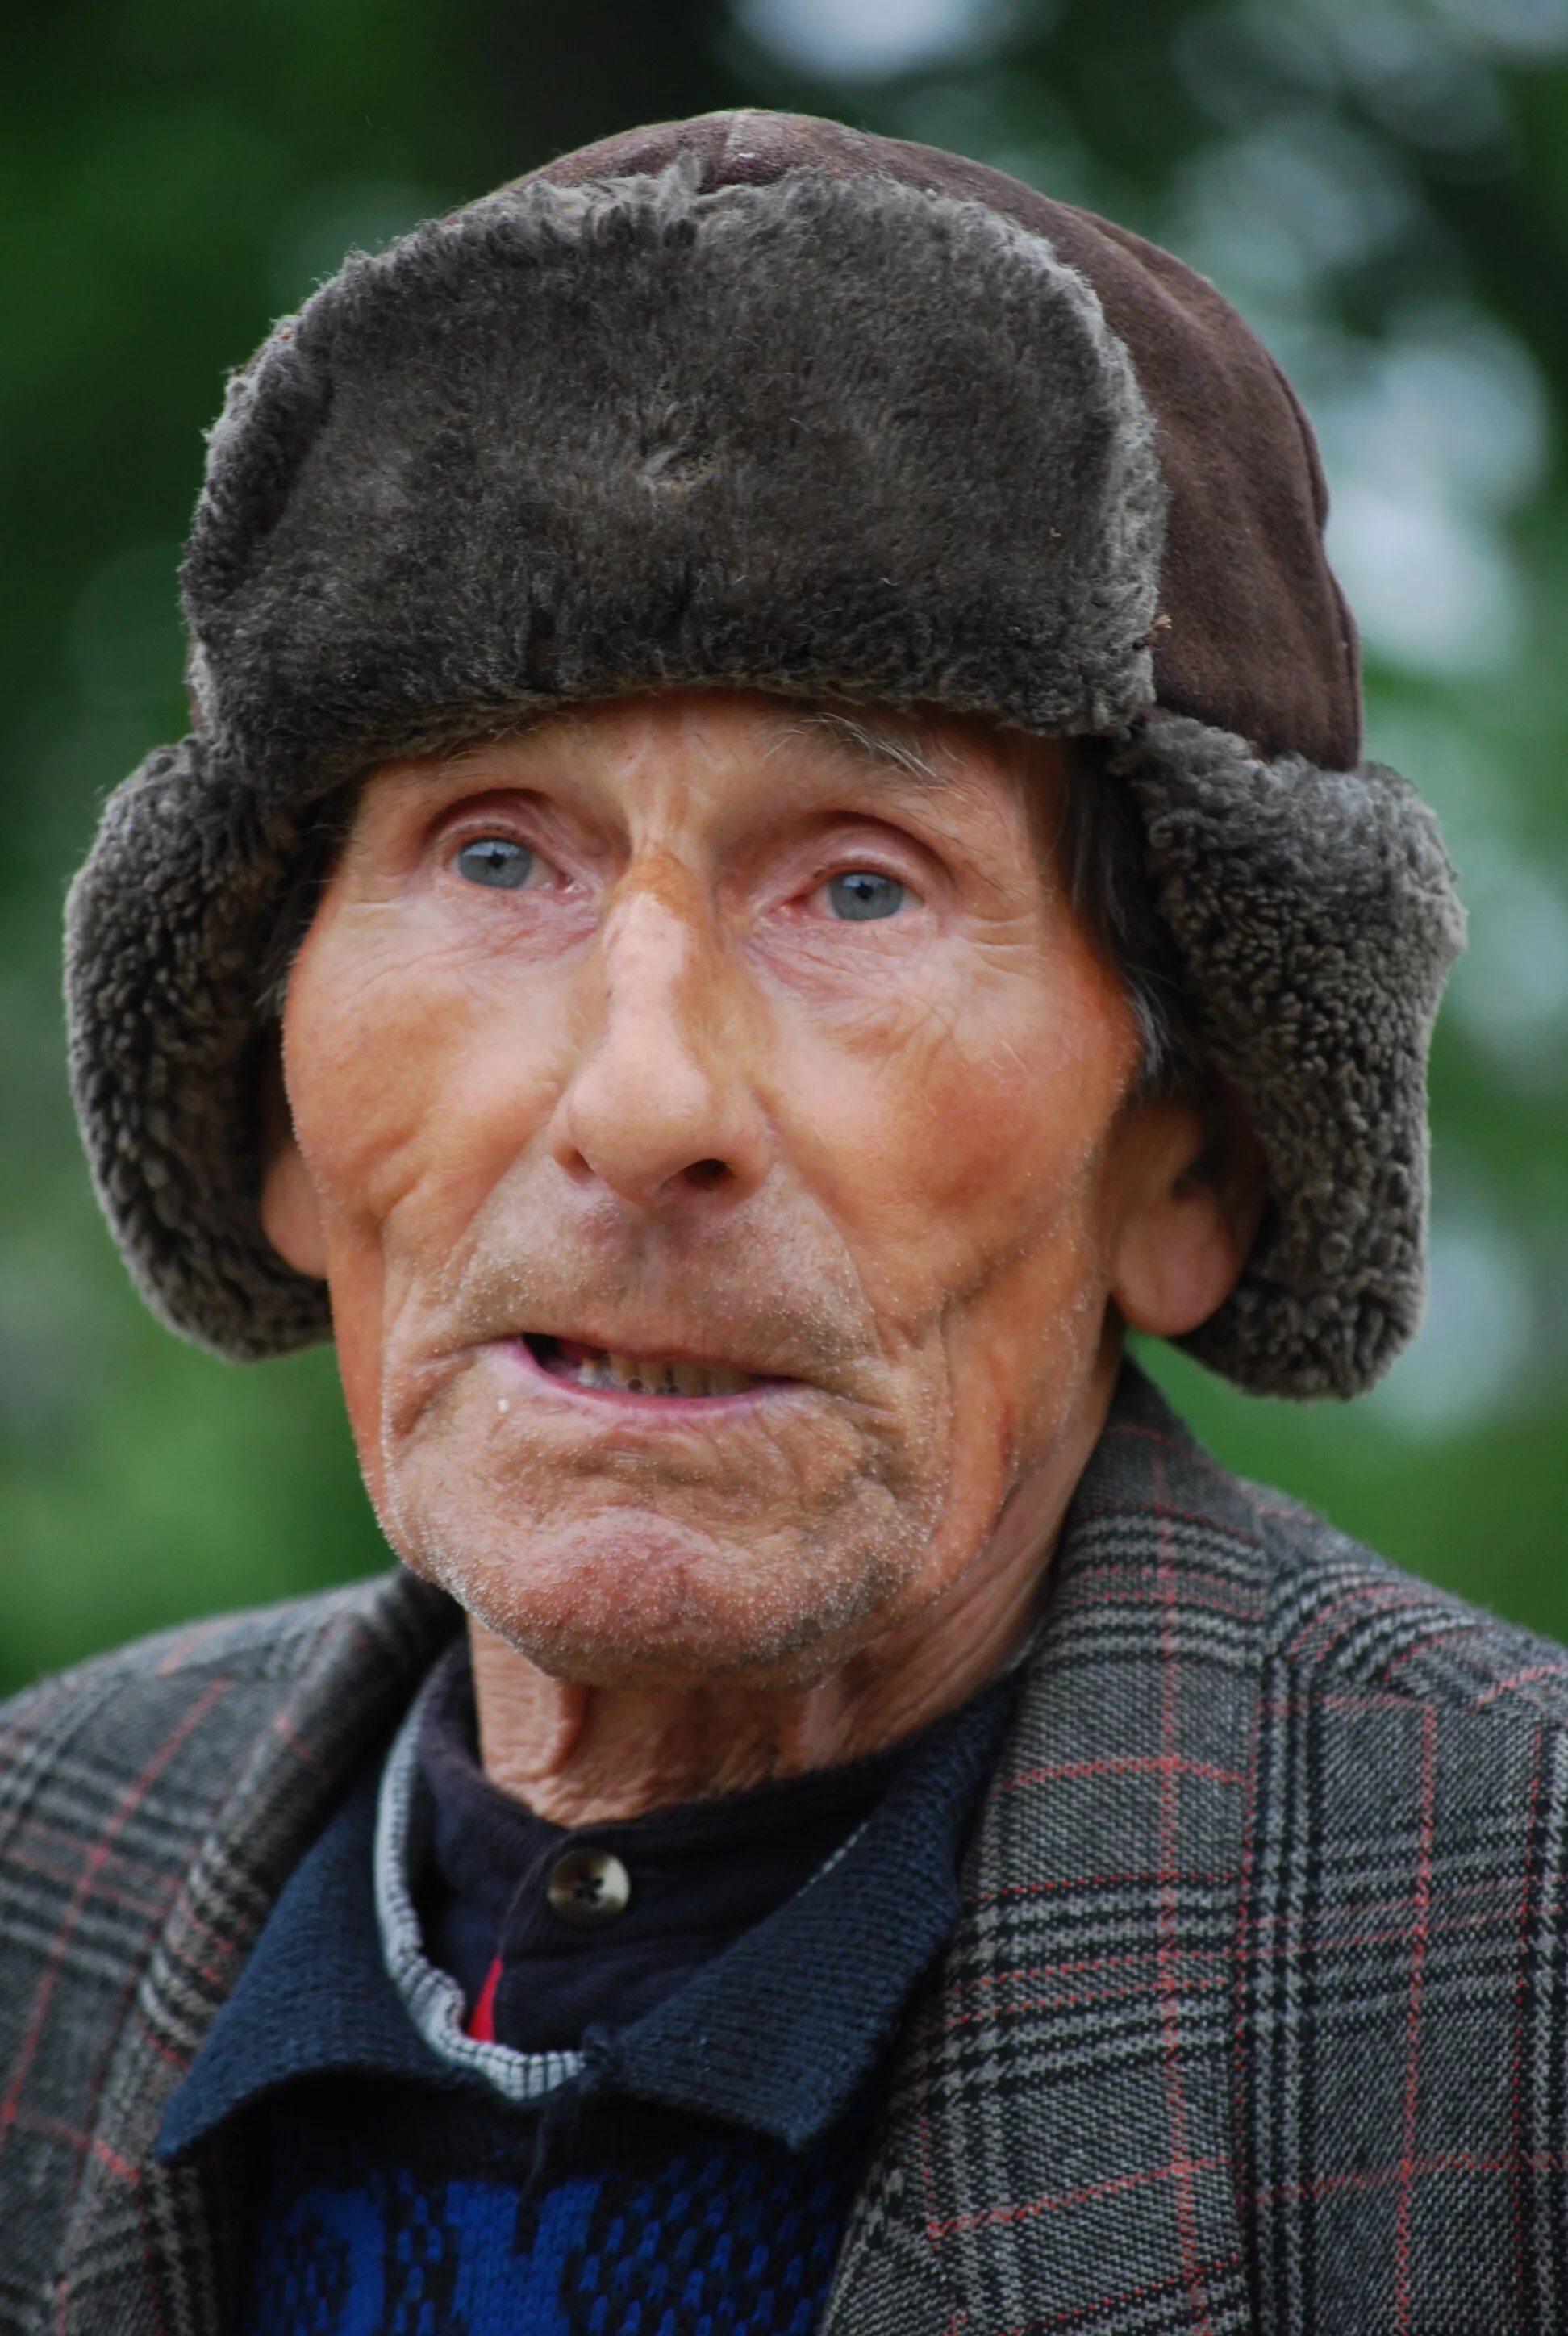 Название старых людей. Старик. Старый человек. Фотографии людей. Портрет пожилого мужчины.